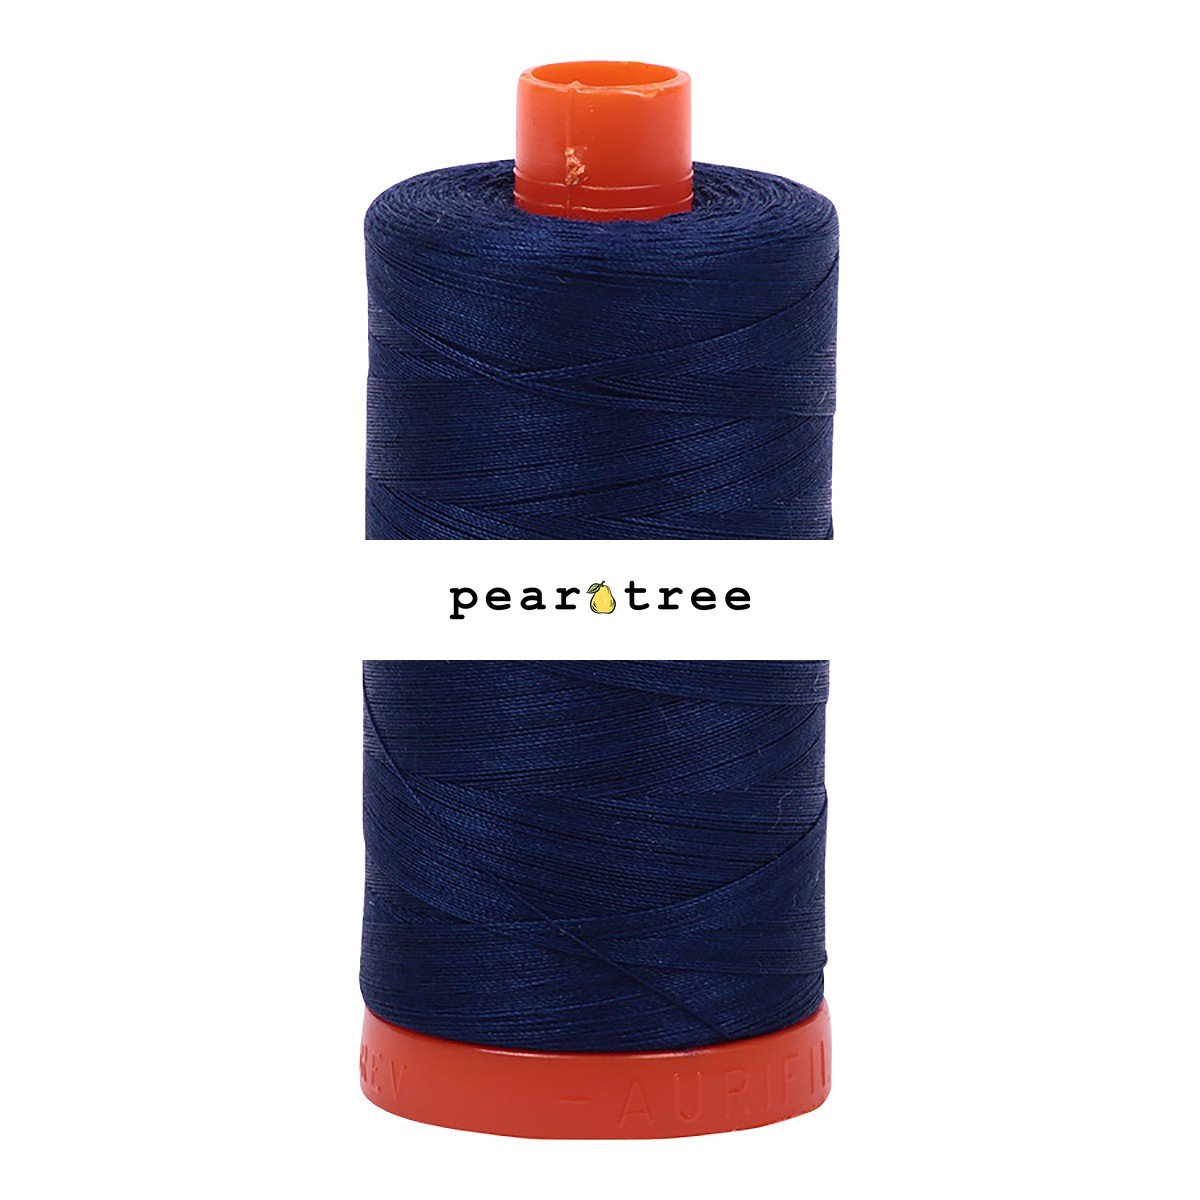 Aurifil 50wt Cotton Thread - Black